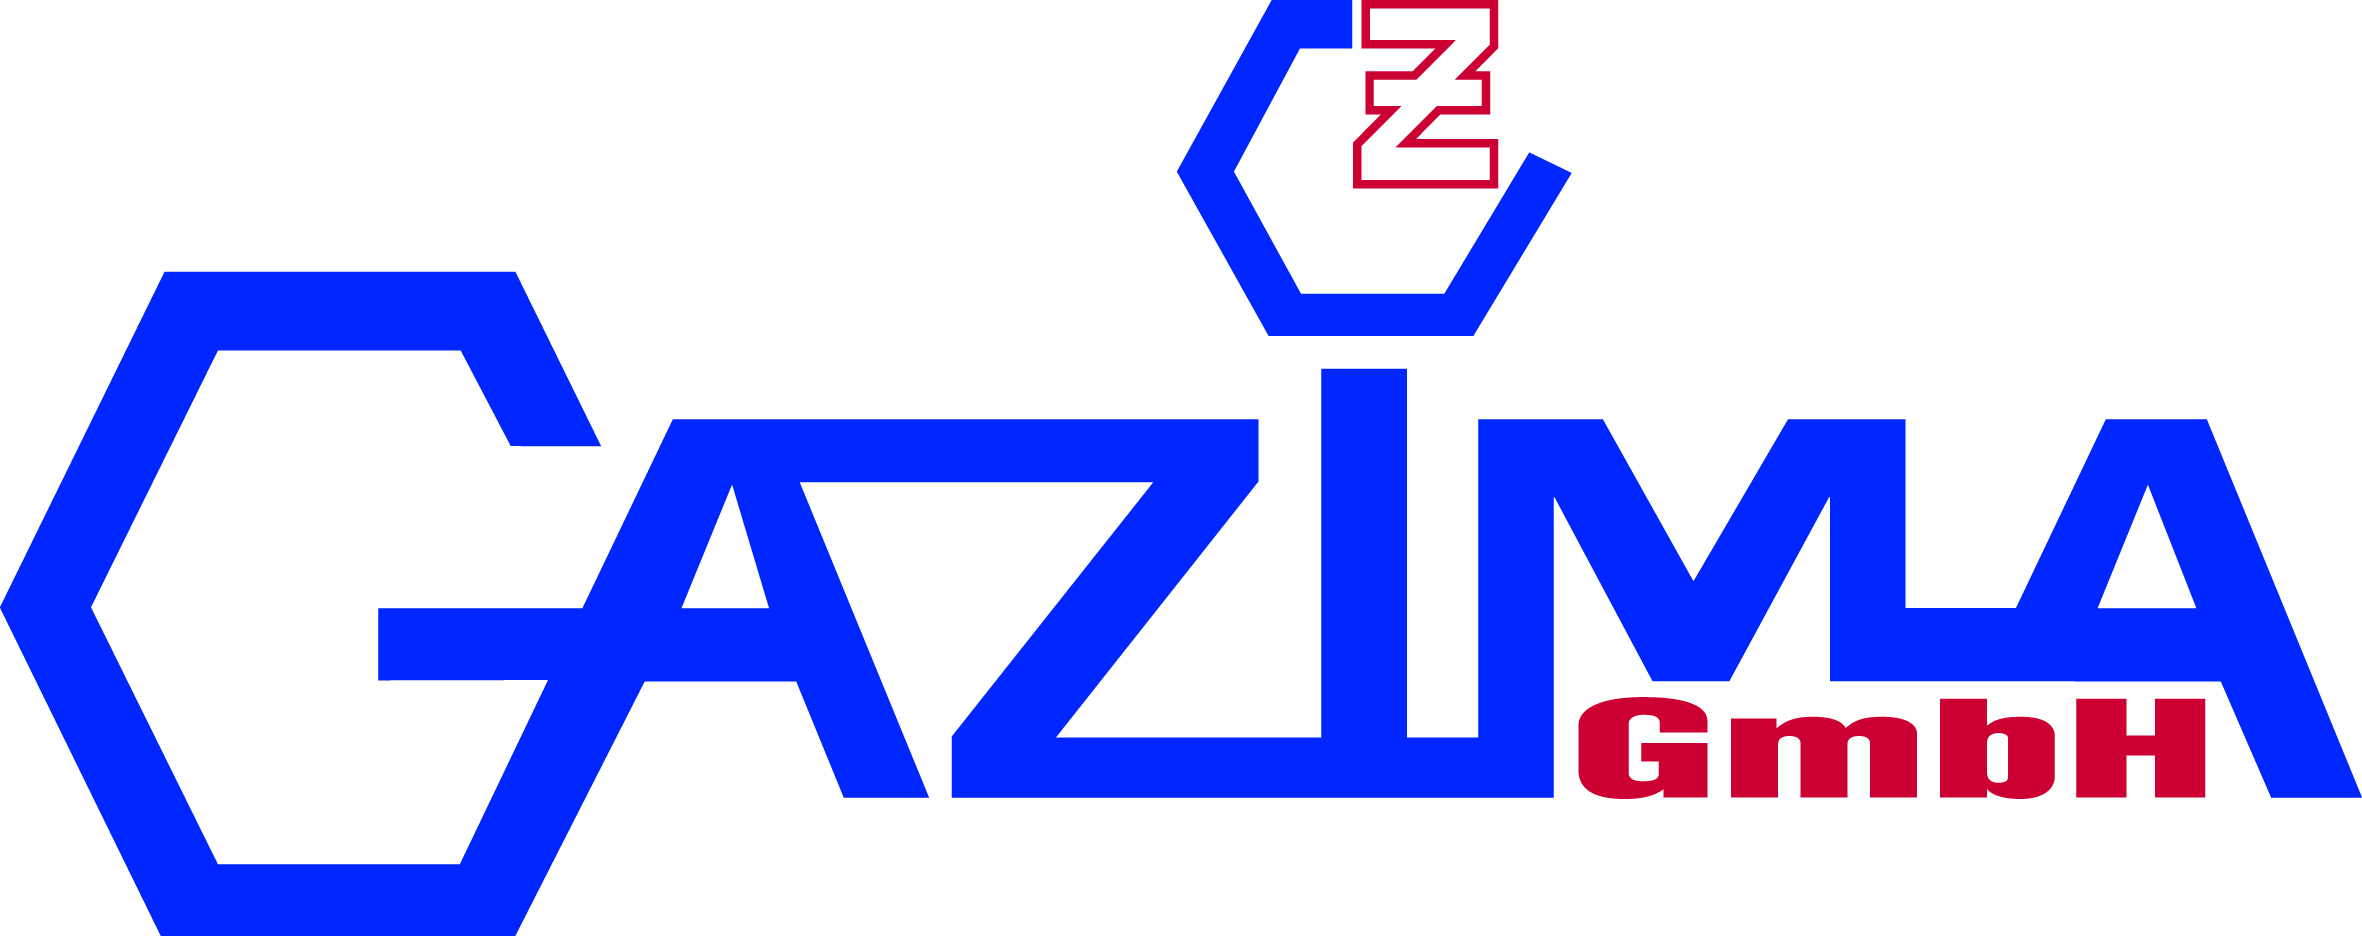 Logo GAZIMA Galvanische Veredelung Zimmermann GmbH